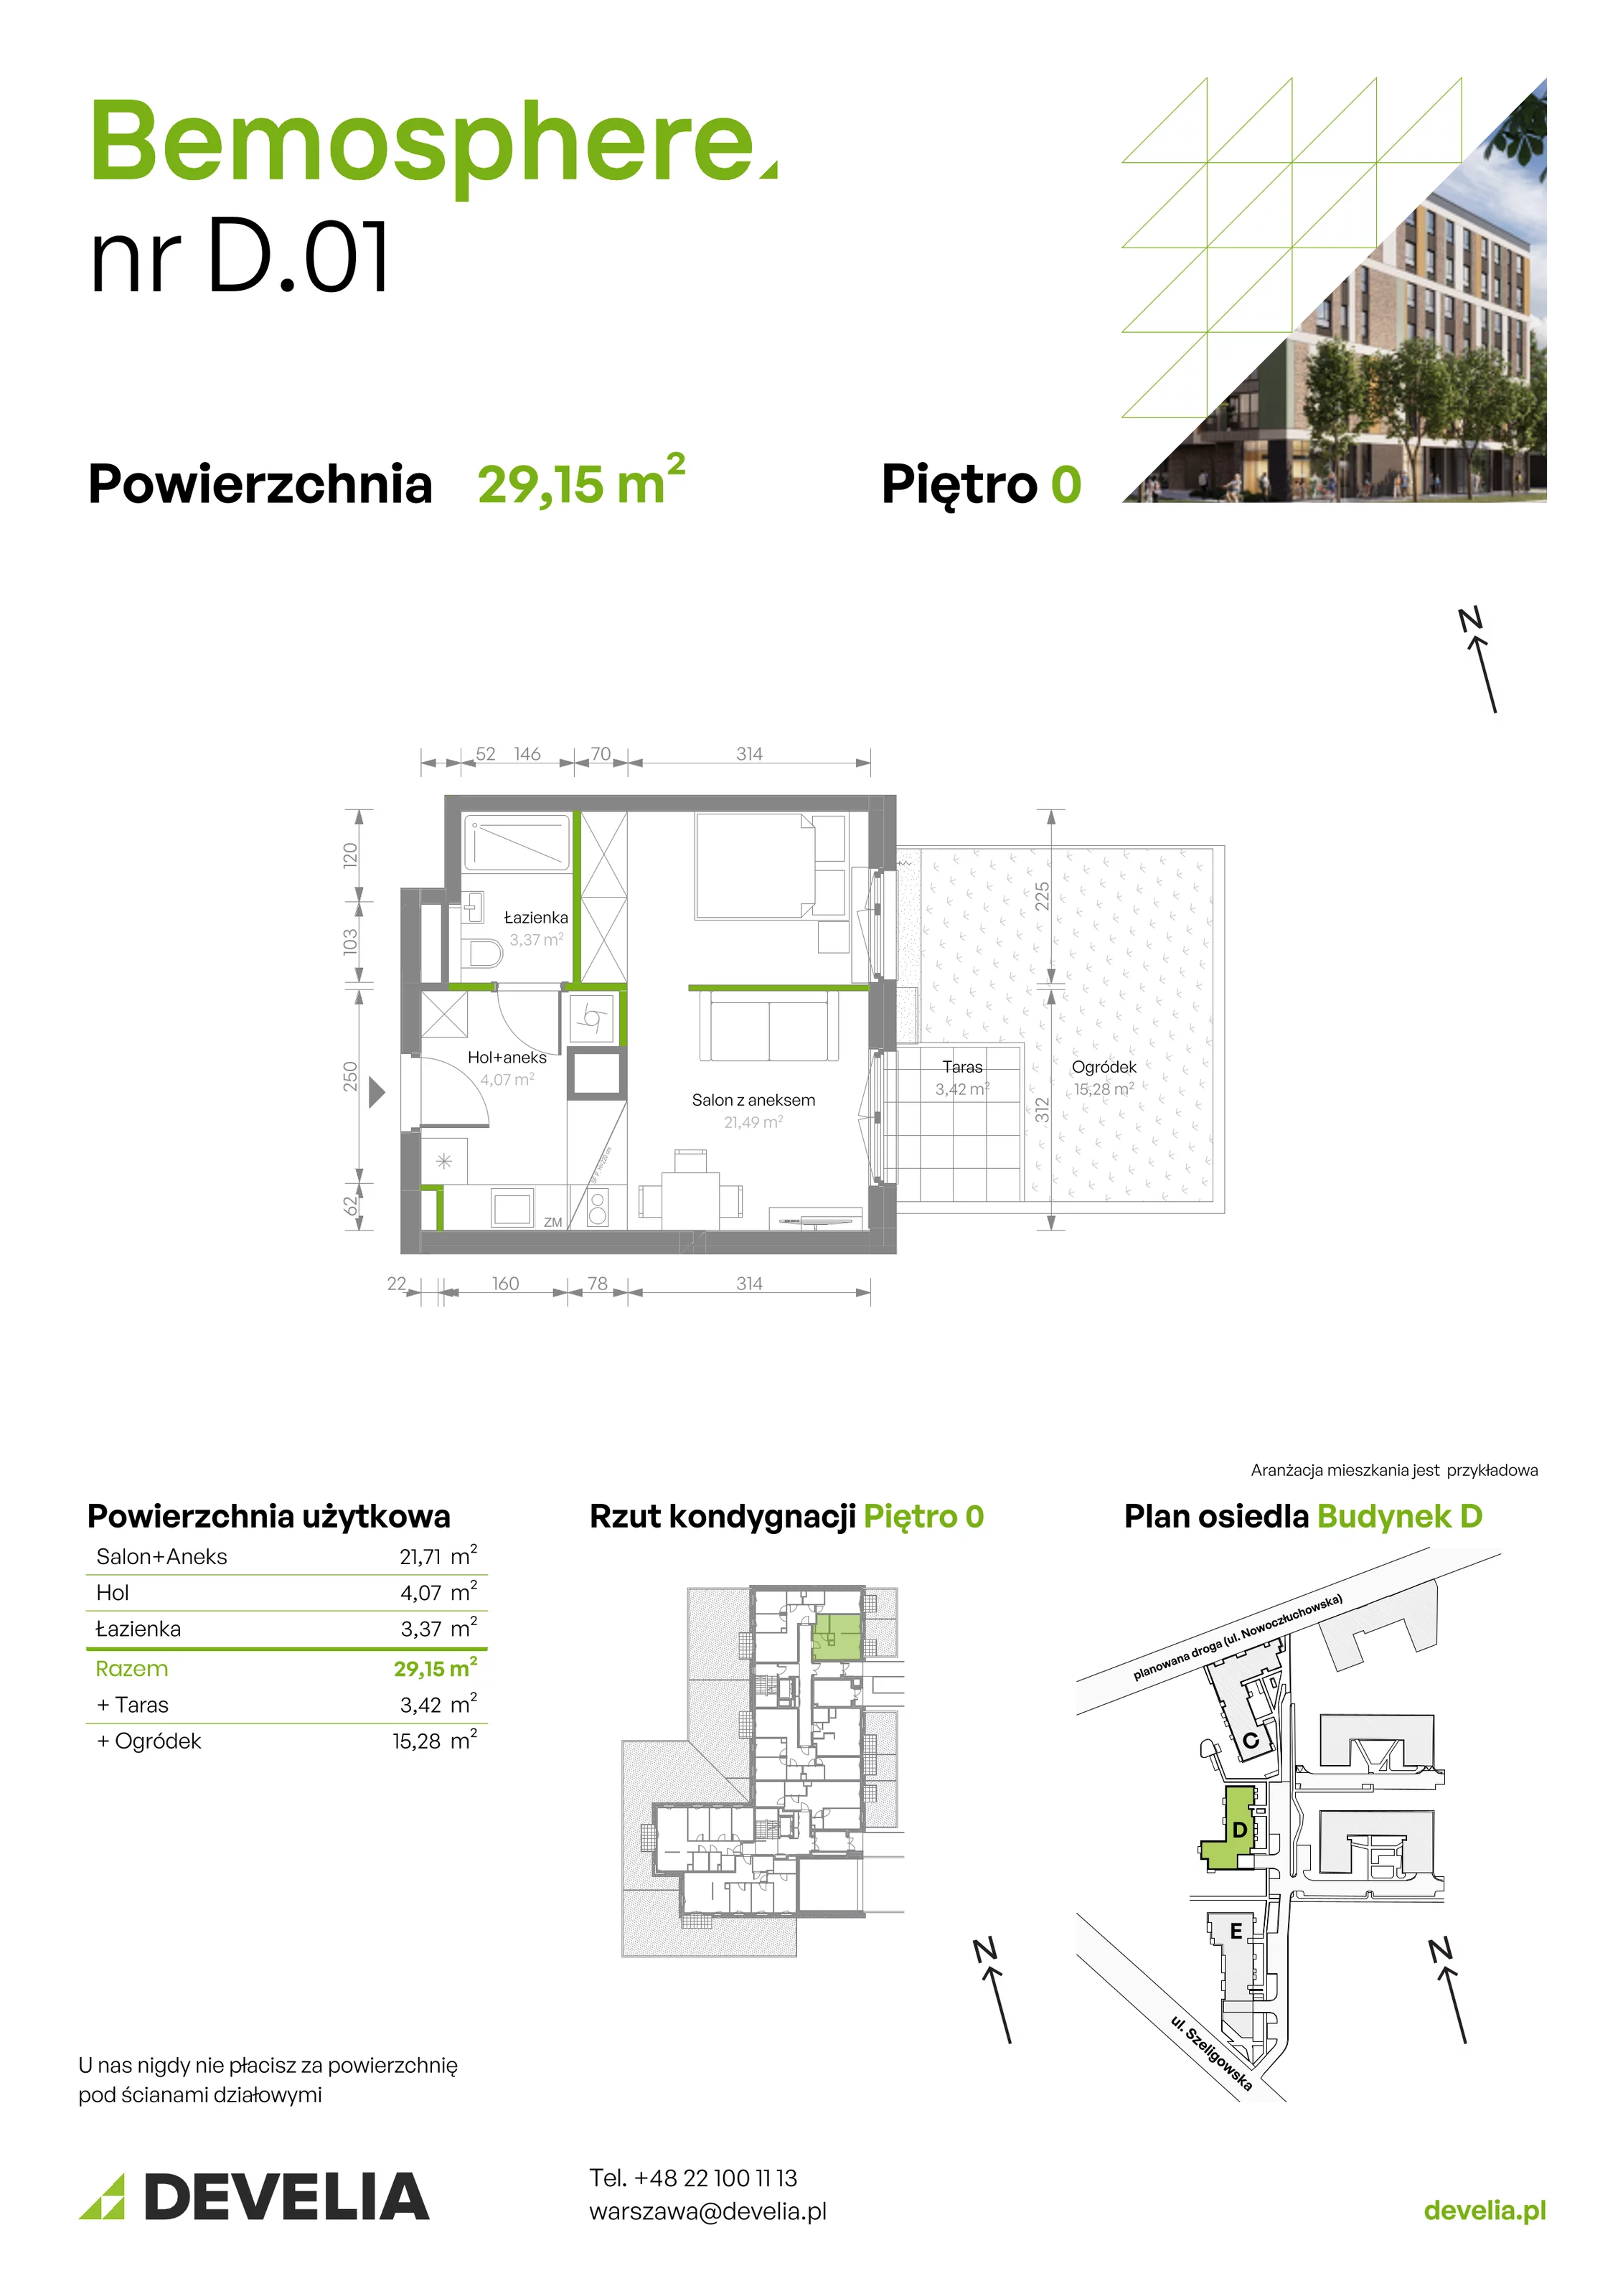 Mieszkanie 29,15 m², parter, oferta nr D/001, Bemosphere, Warszawa, Bemowo, Chrzanów, ul. Szeligowska 24